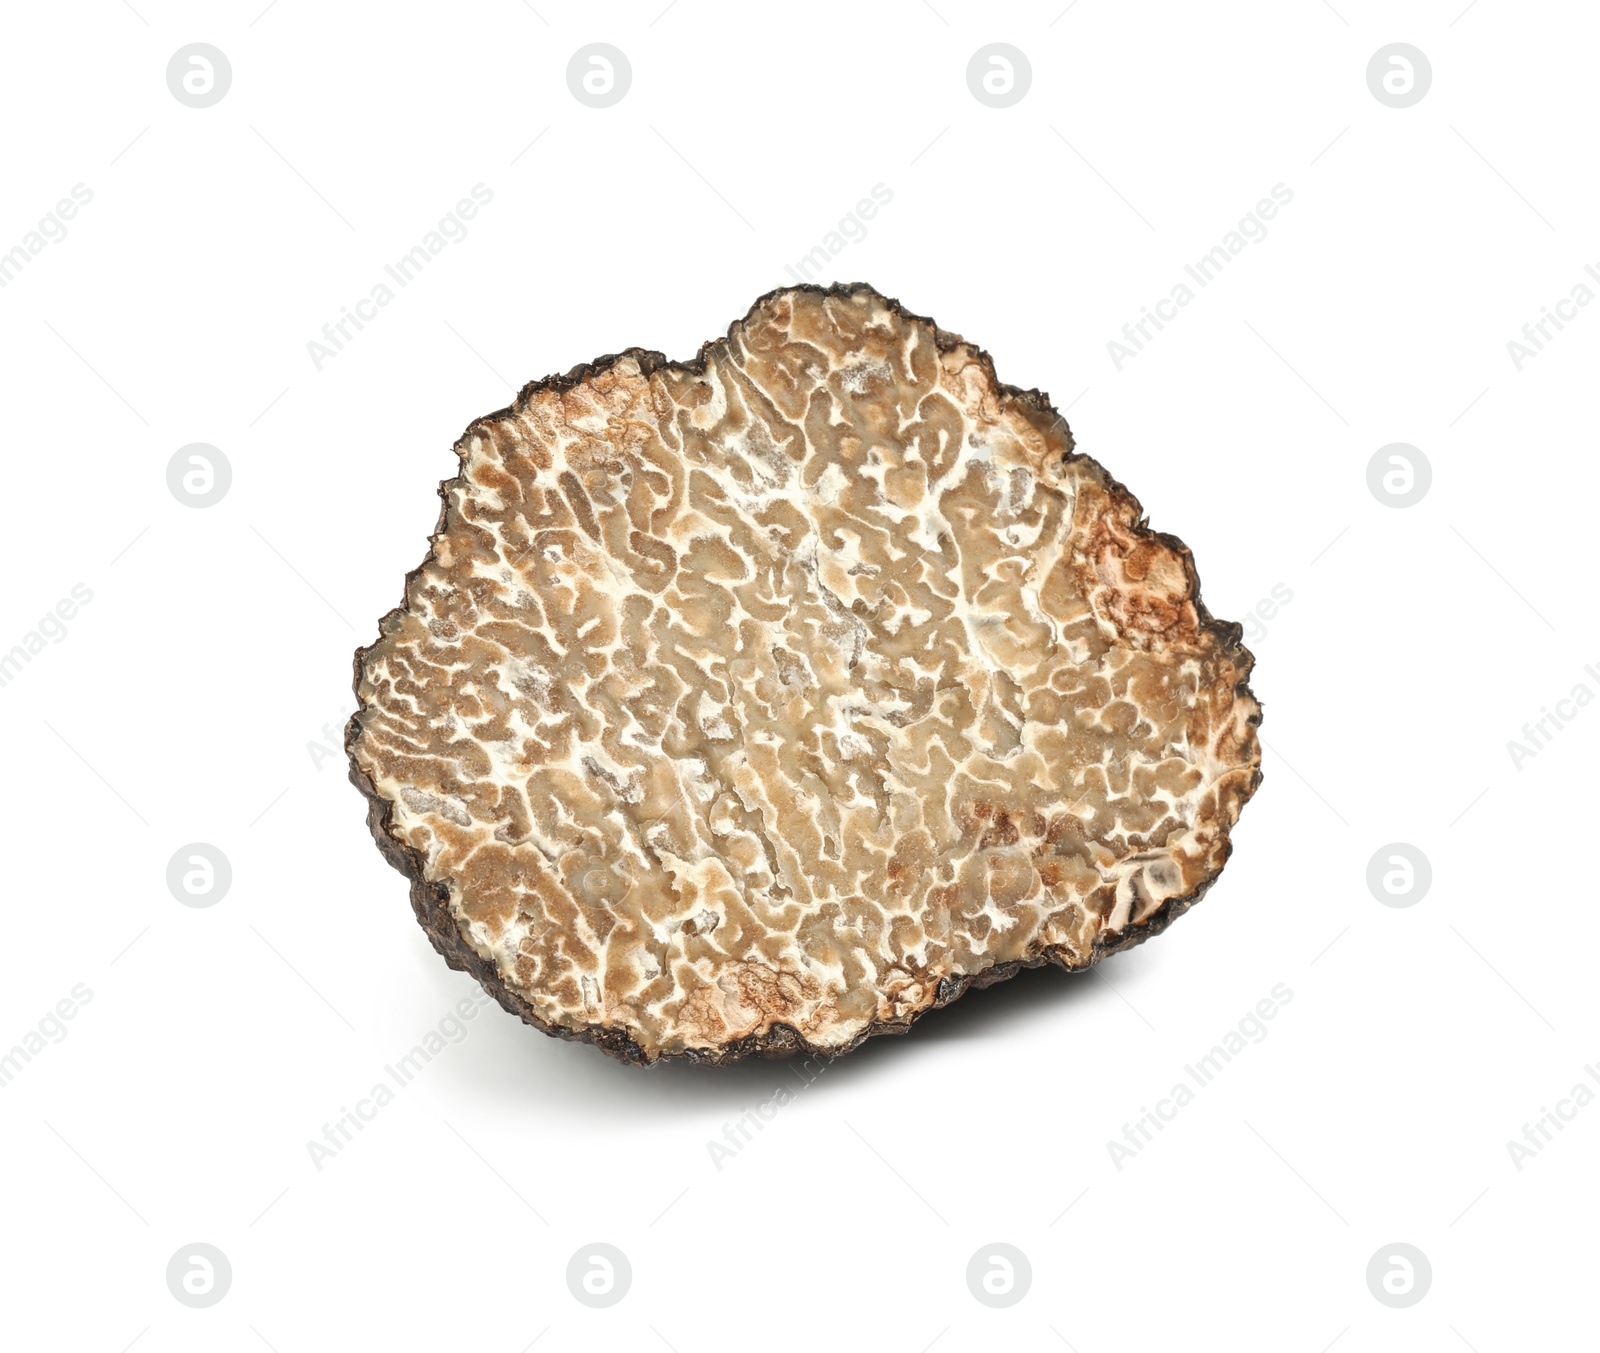 Photo of Cut fresh black truffle isolated on white